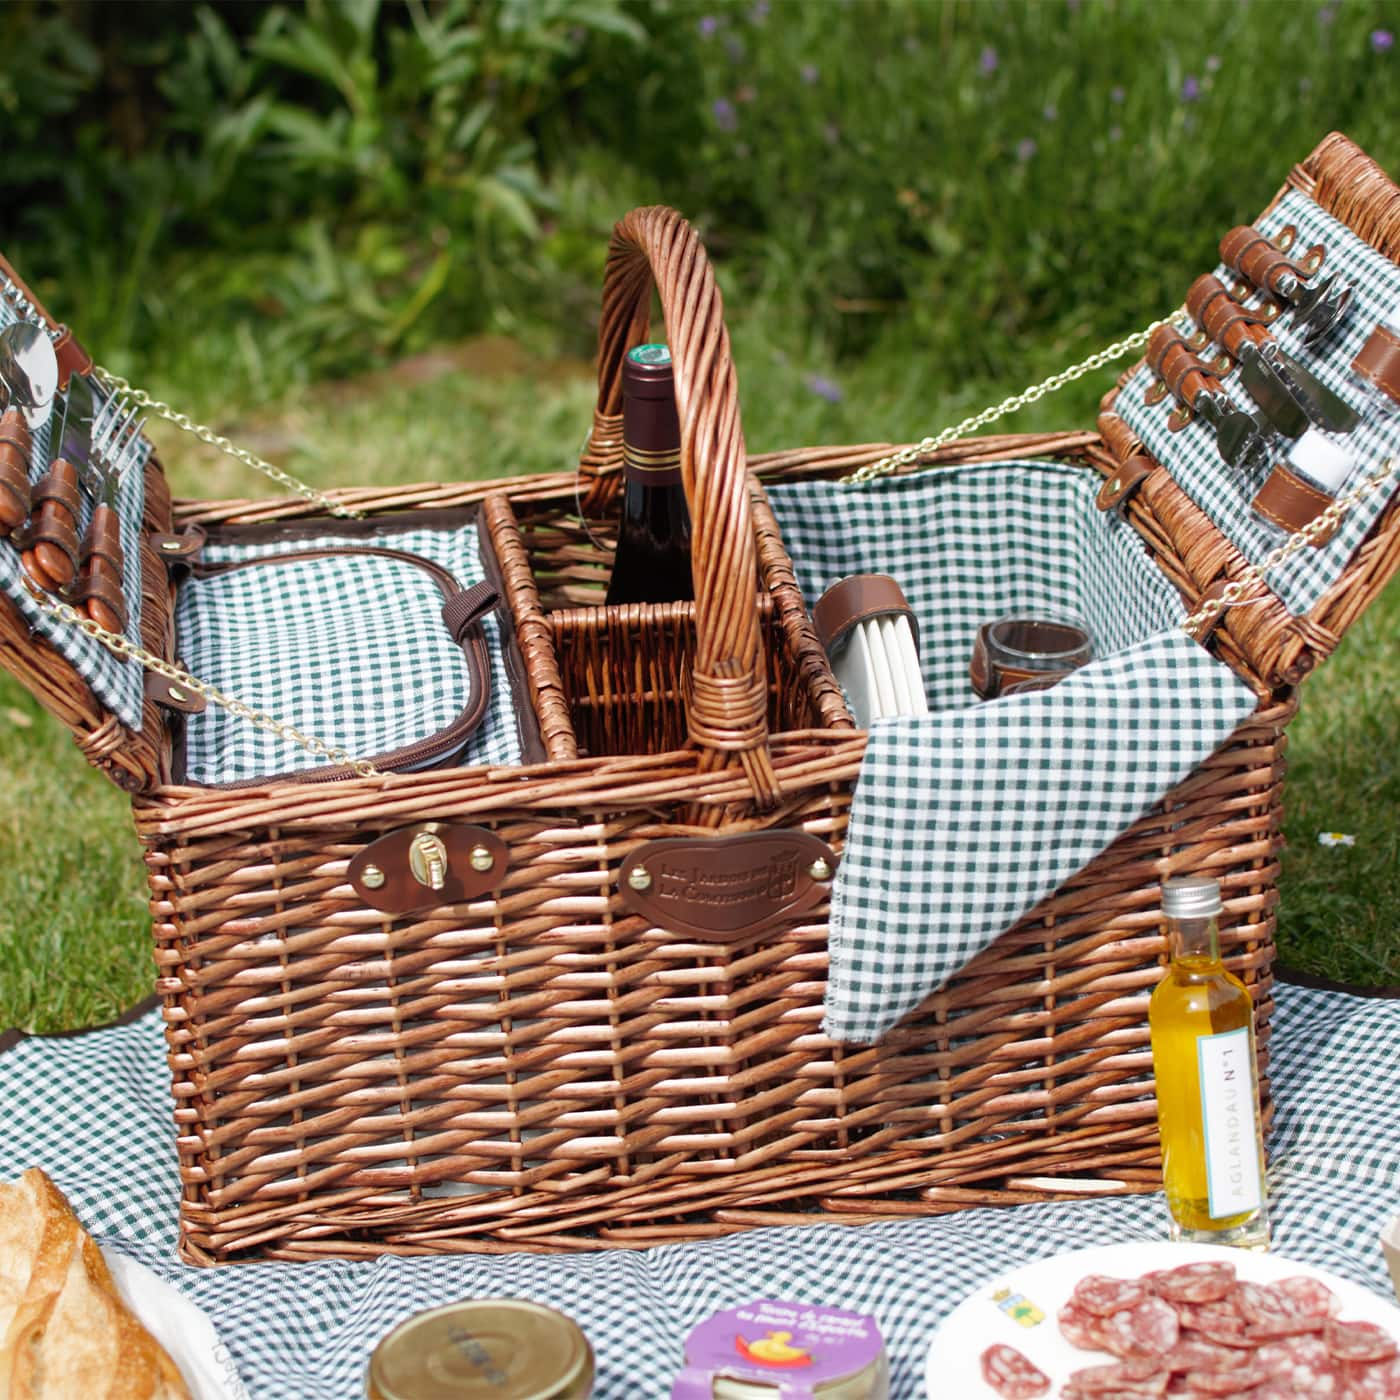 Picknickkorb „Saint-Germain grünkariert“ aus dunkler Weide - 4 Personen